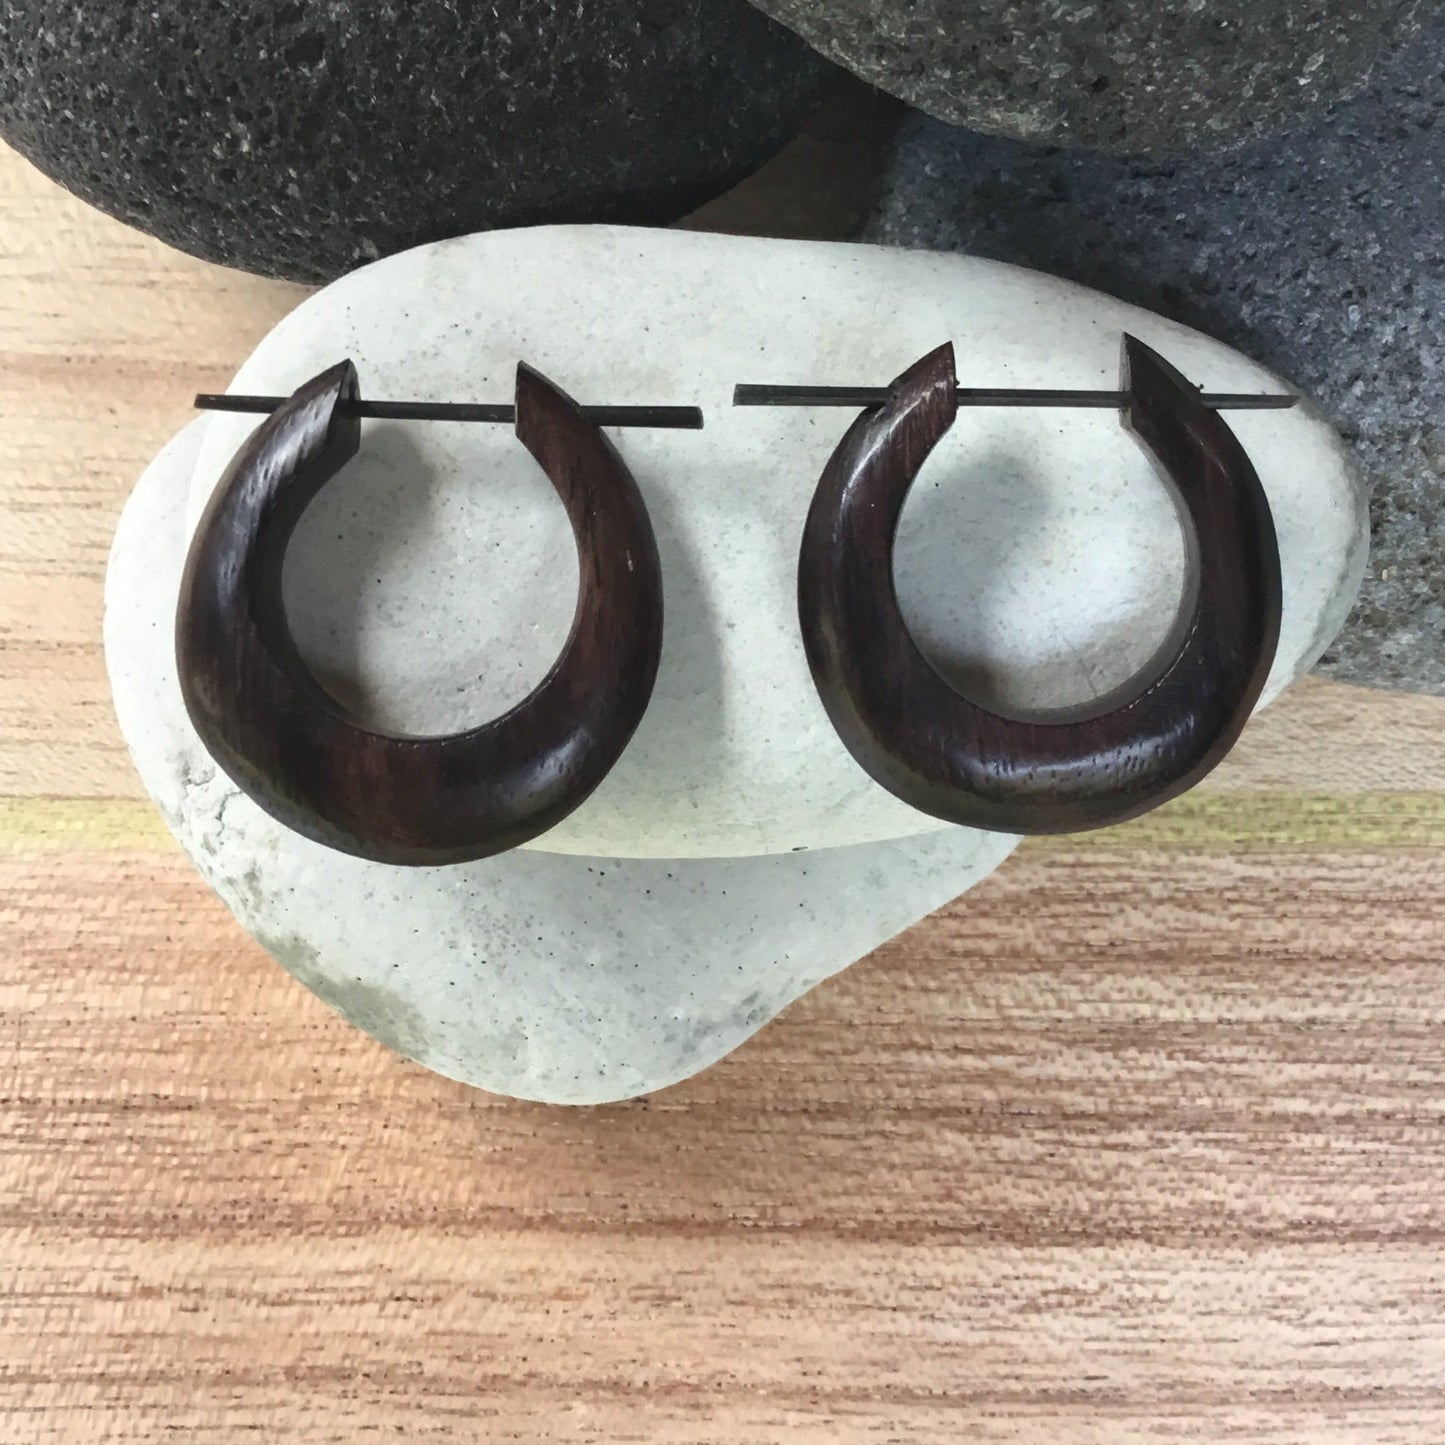 large wood hoop earrings.